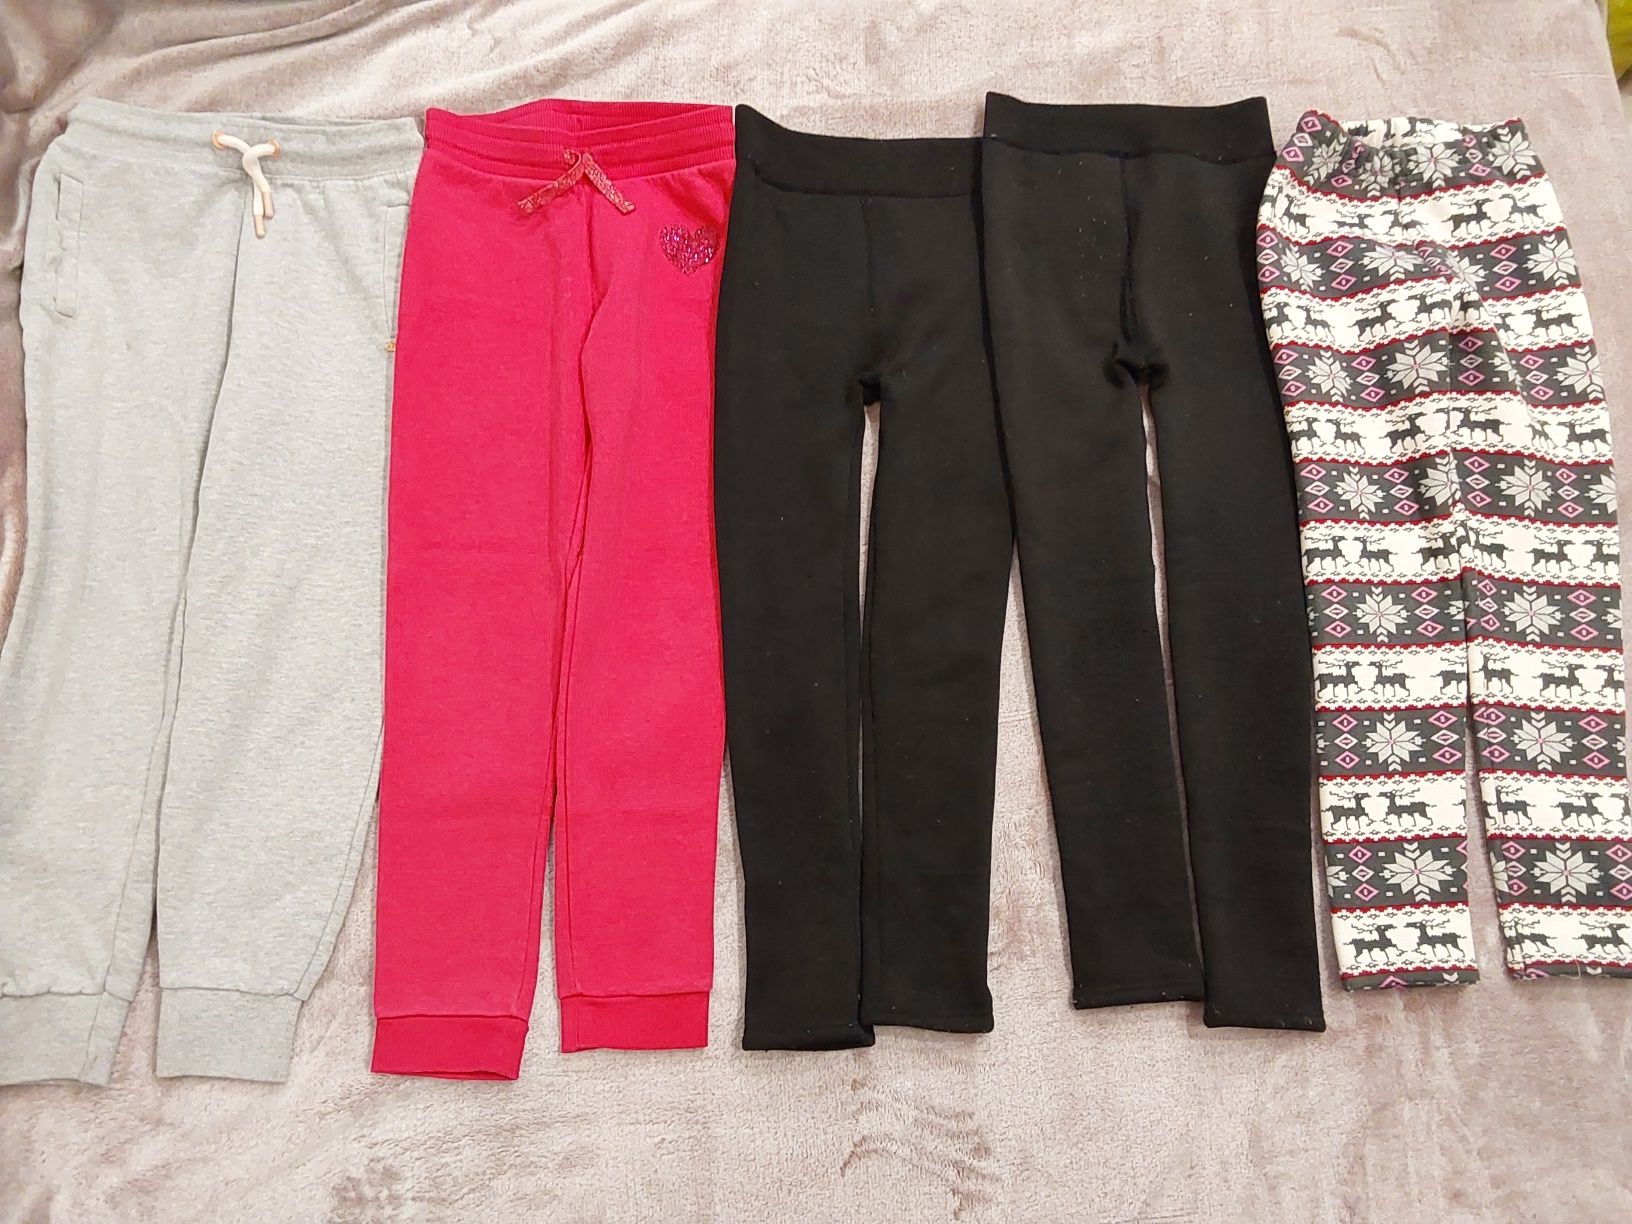 Джинсы, штаны, колготы, вещи на девочку 6-8 лет